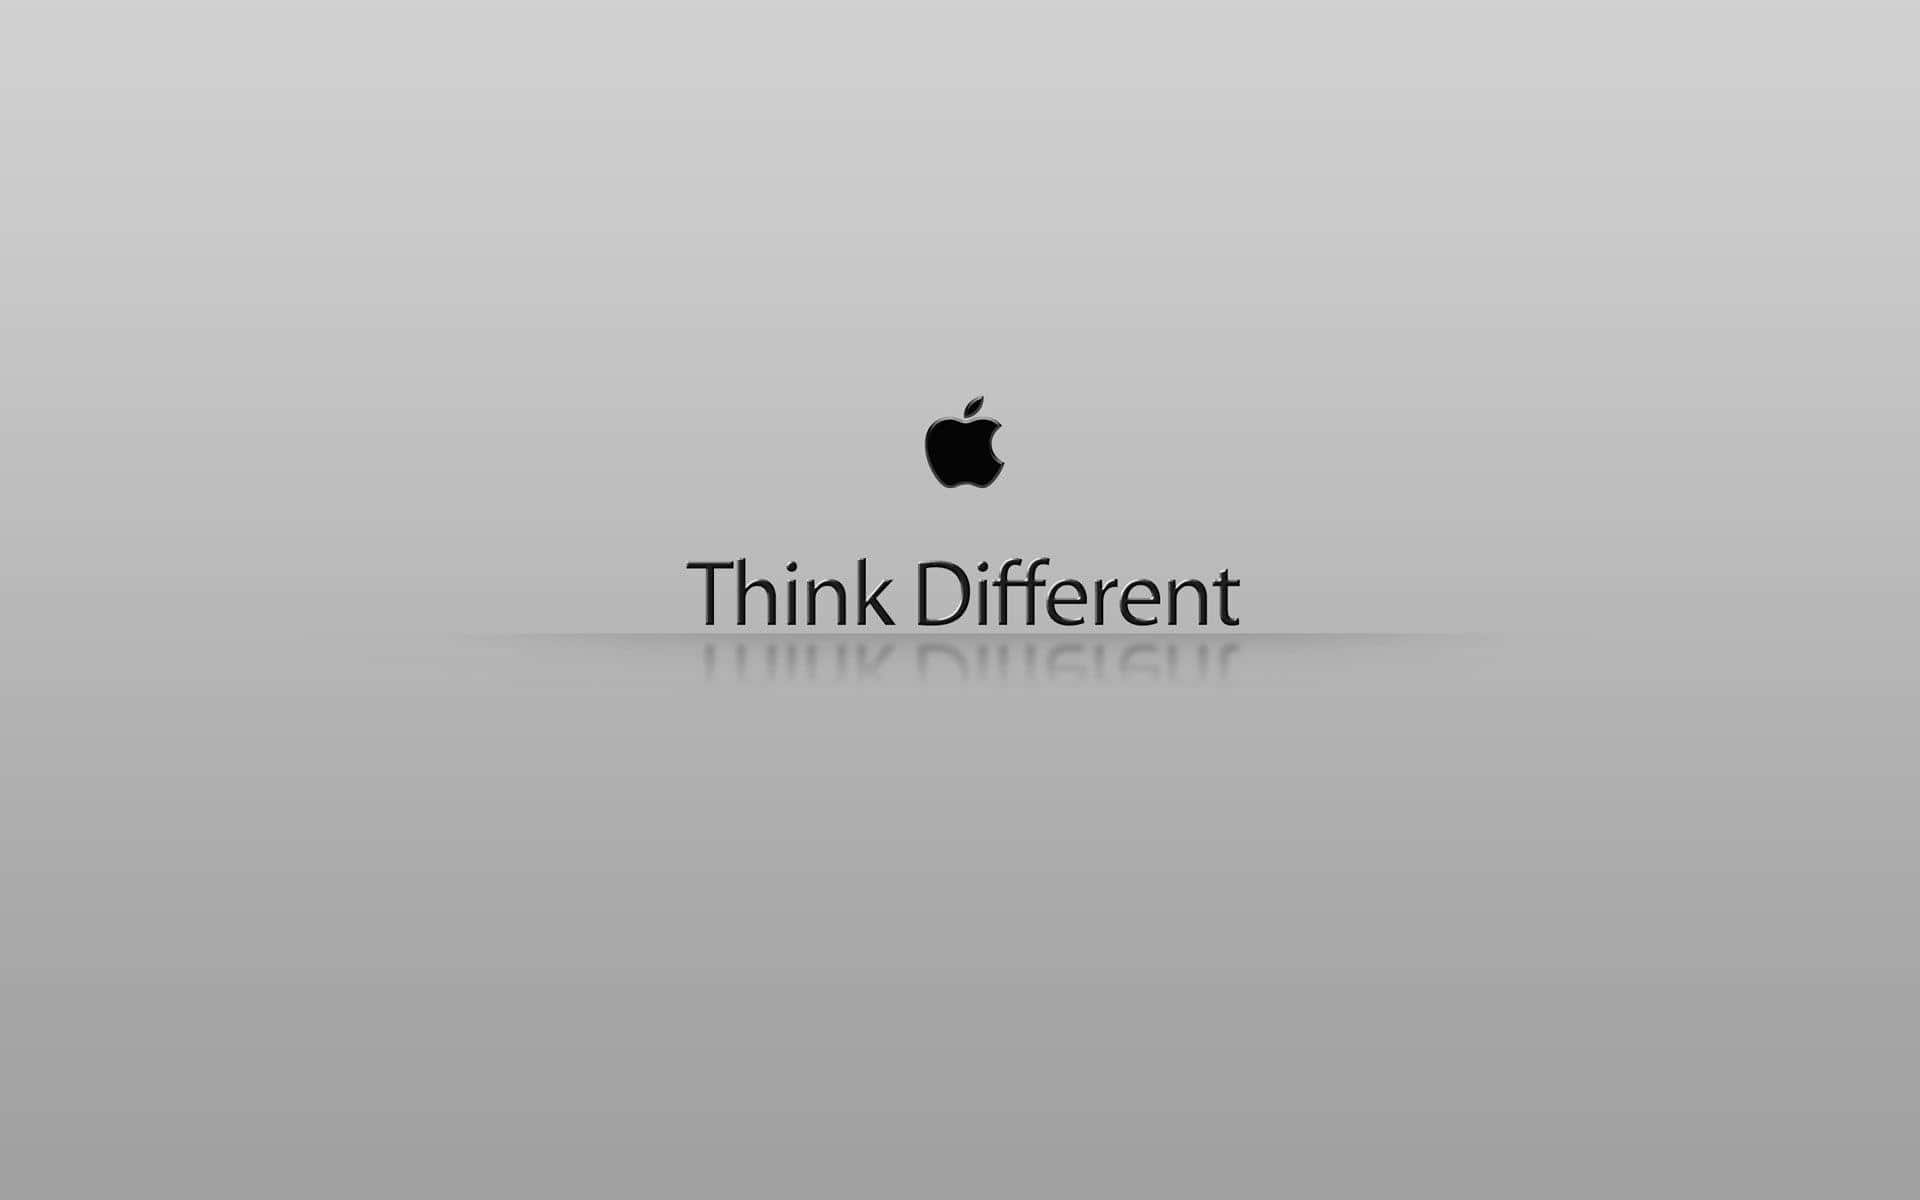 Minimalist Best Apple Logo And Tagline Wallpaper